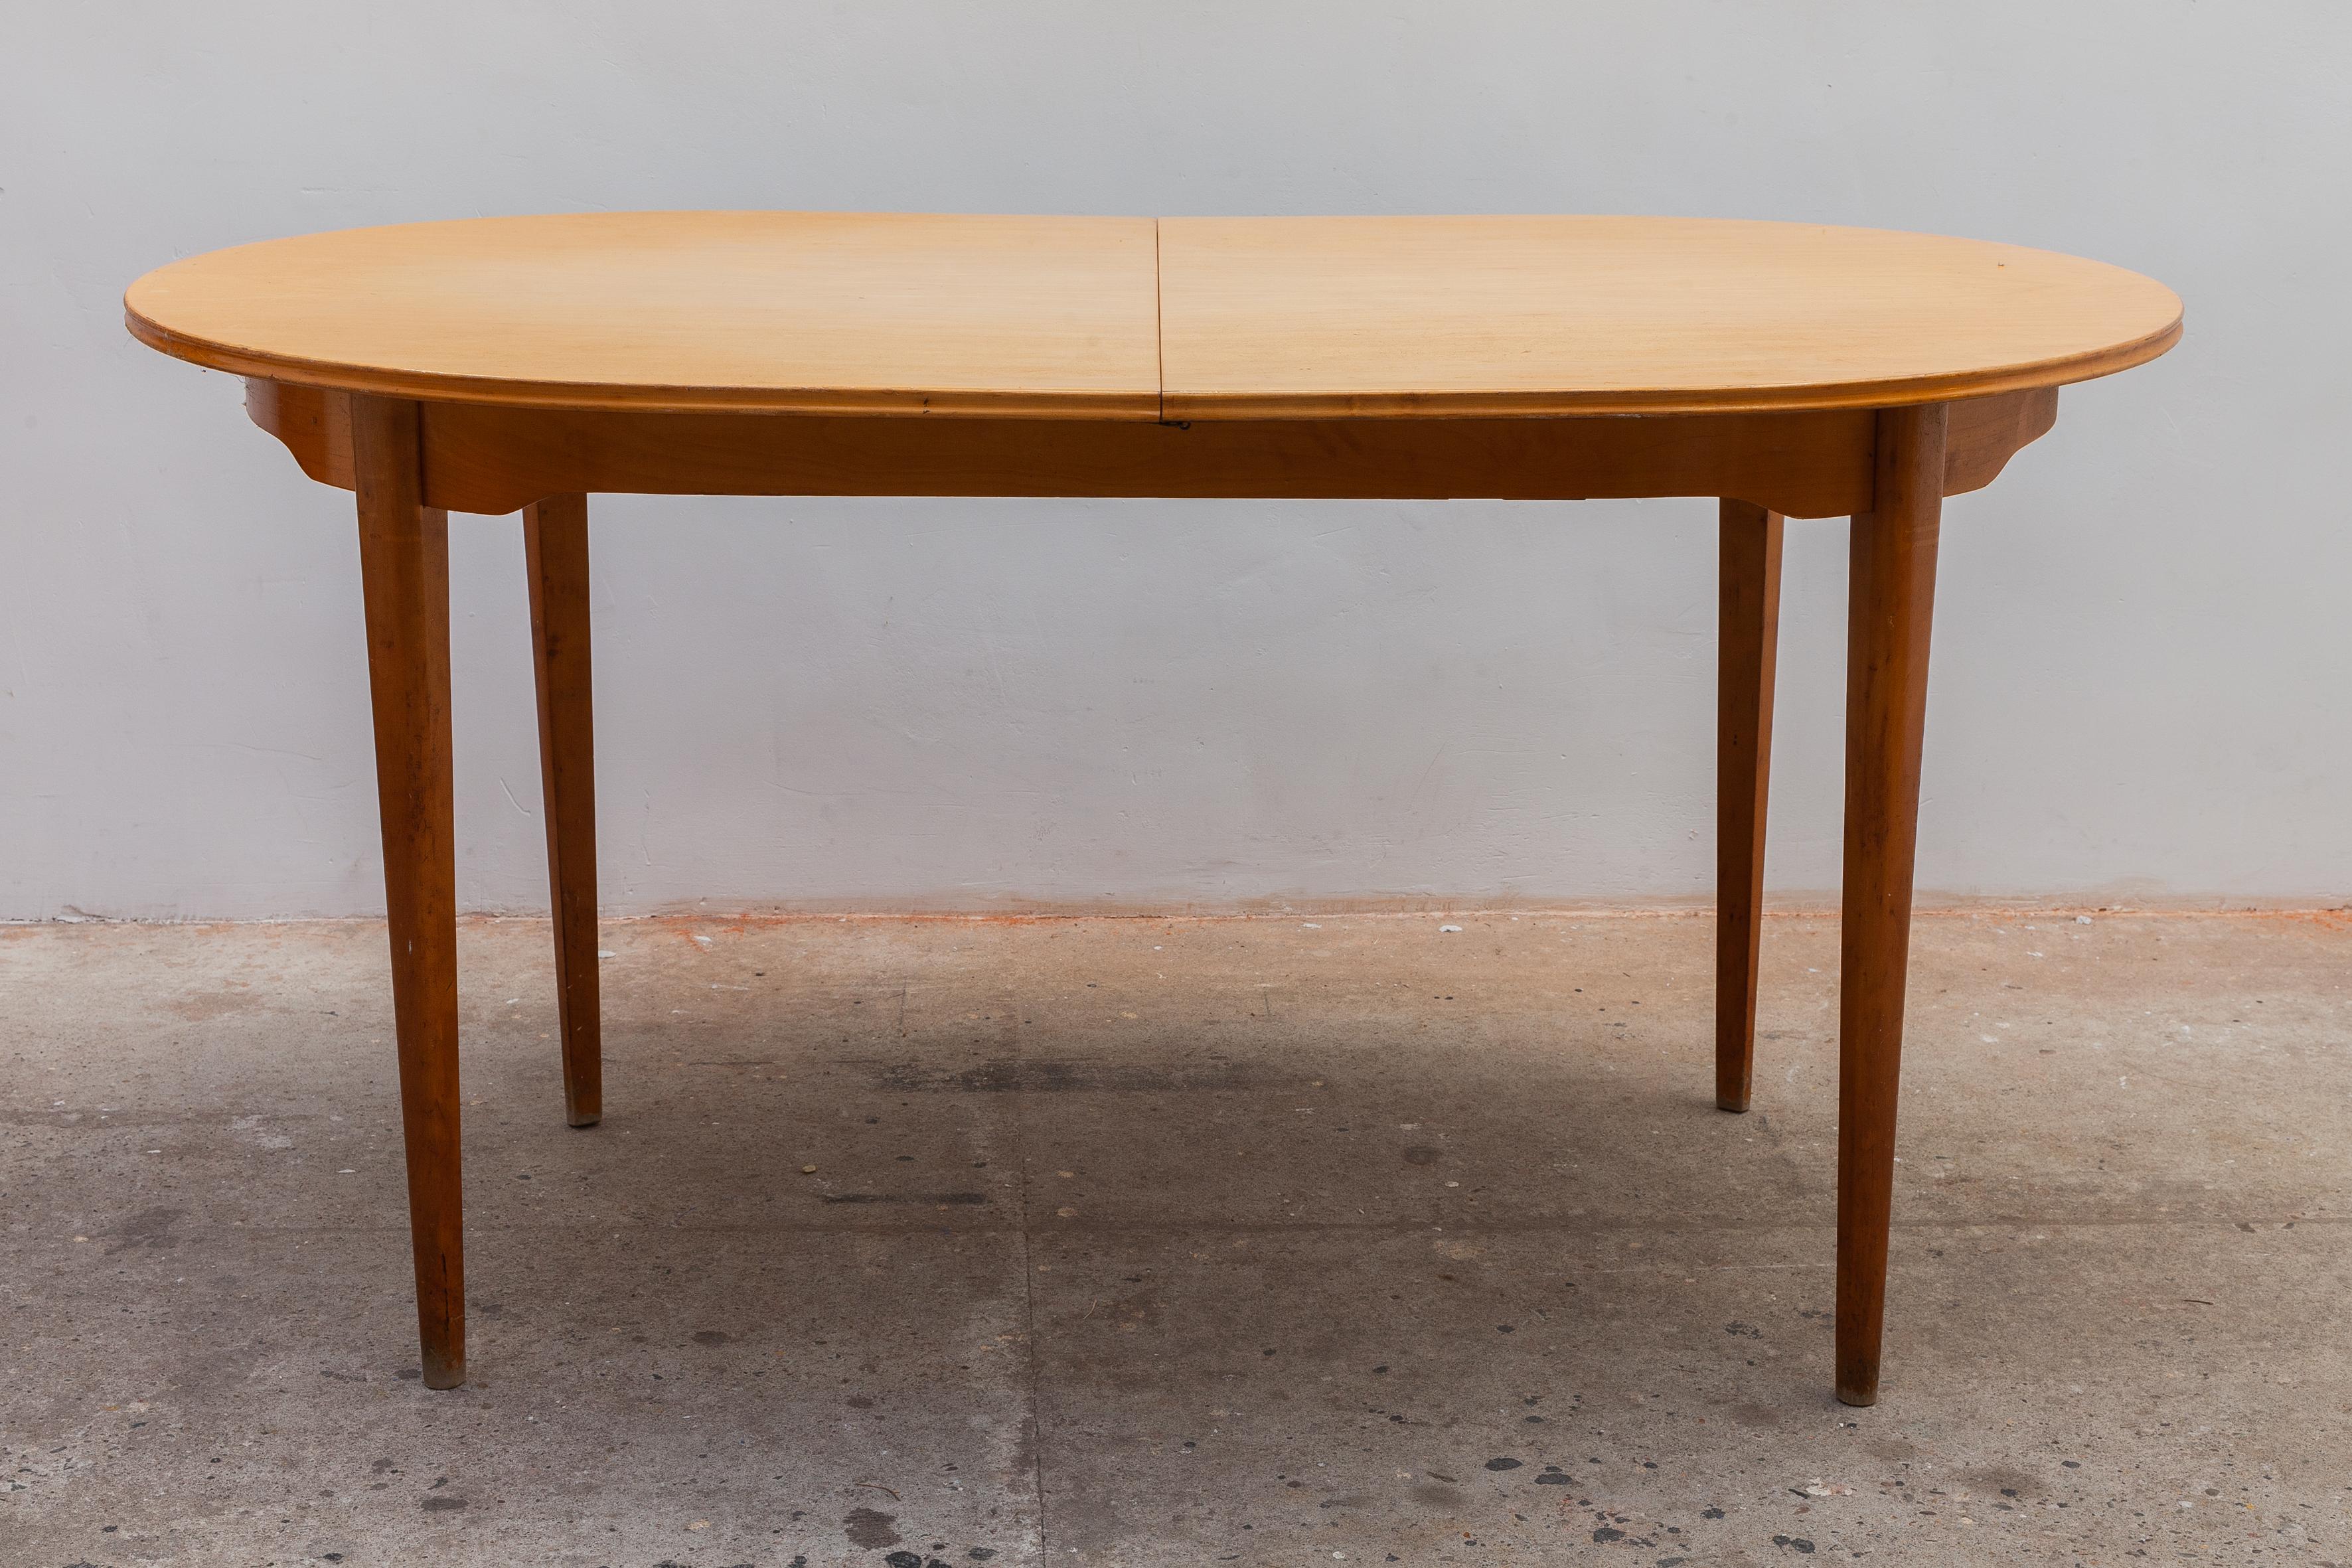 Superbe table de salle à manger originale des années 50 en bois satiné, d'une qualité exceptionnelle. Elle serait parfaite comme table de cuisine, comme table d'appoint ou même comme bureau. Le bois satiné est extraordinairement beau, avec une